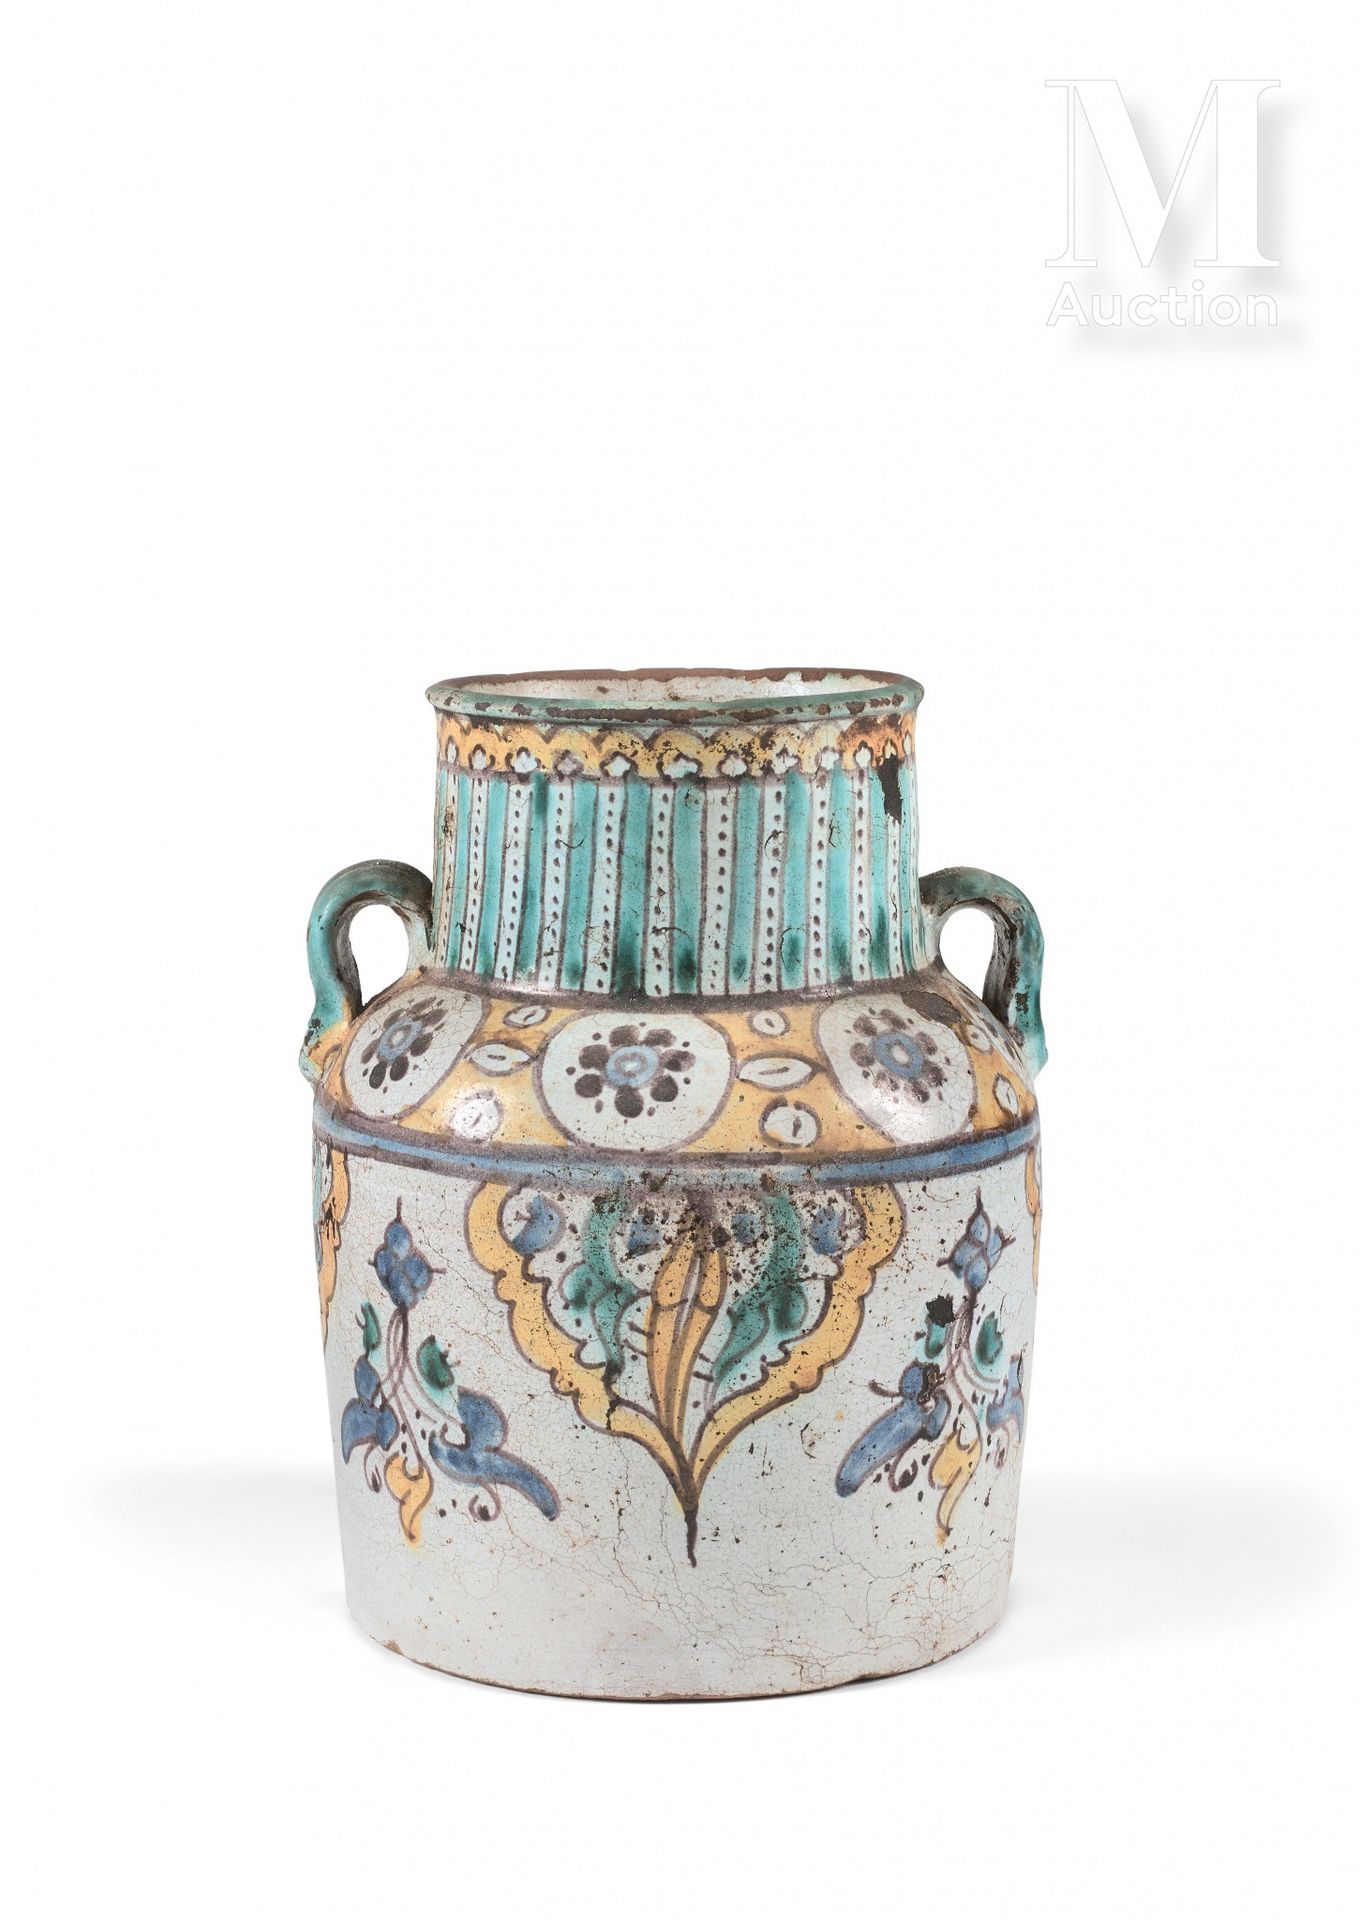 Qolla - Jarre à deux anses Morocco, Fez, 18th century

Polychrome ceramic painte&hellip;